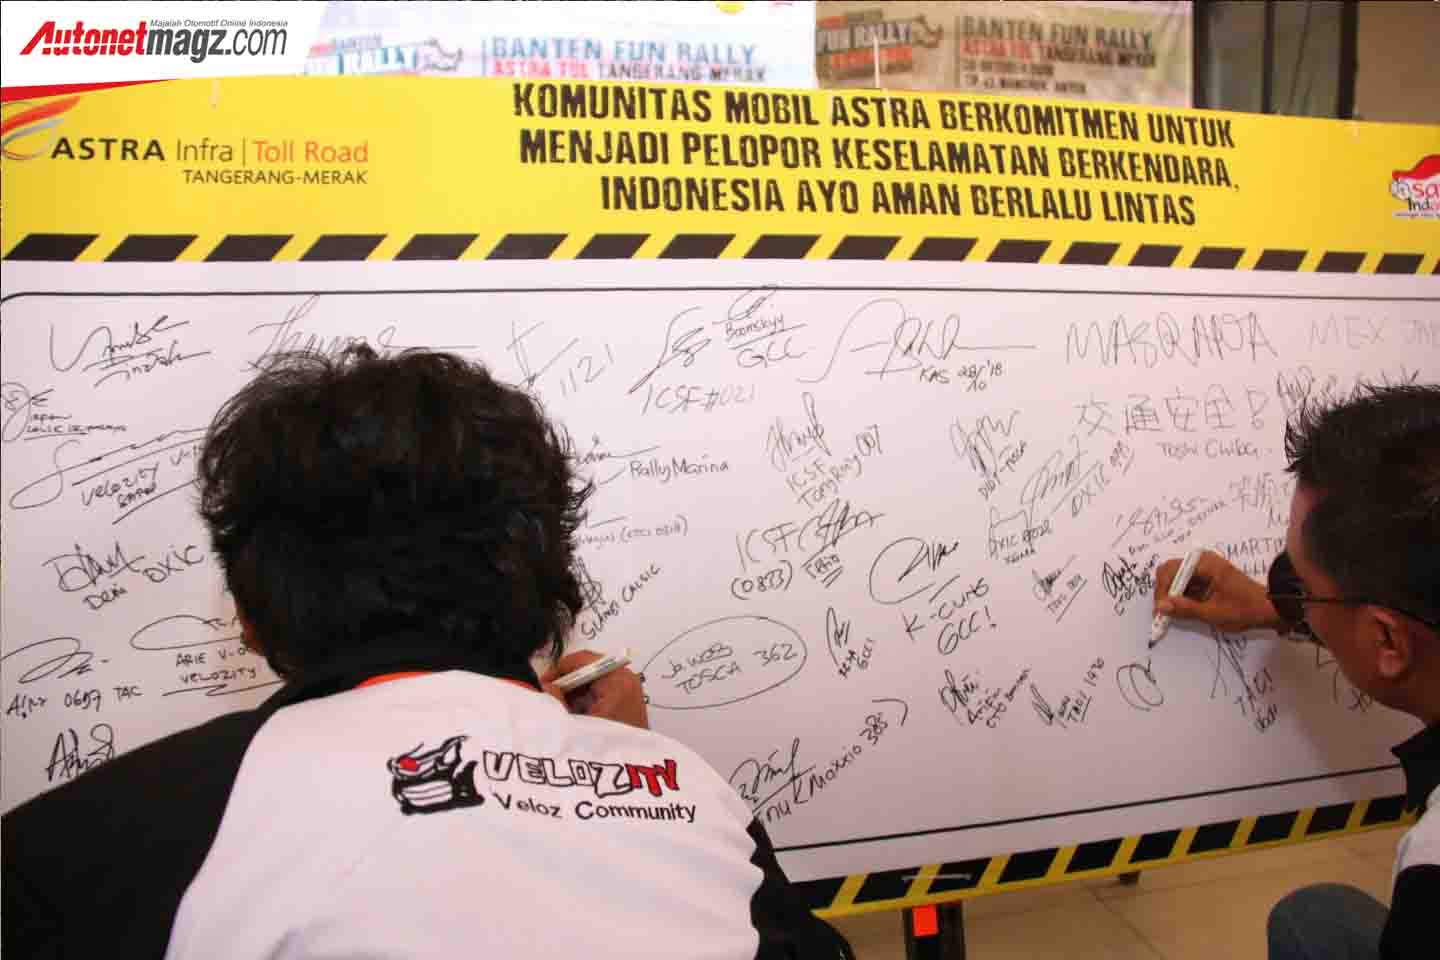 Berita, Banten Safety Driving: Velozity Turut Mendukung Program Safety Driving Ala Astra